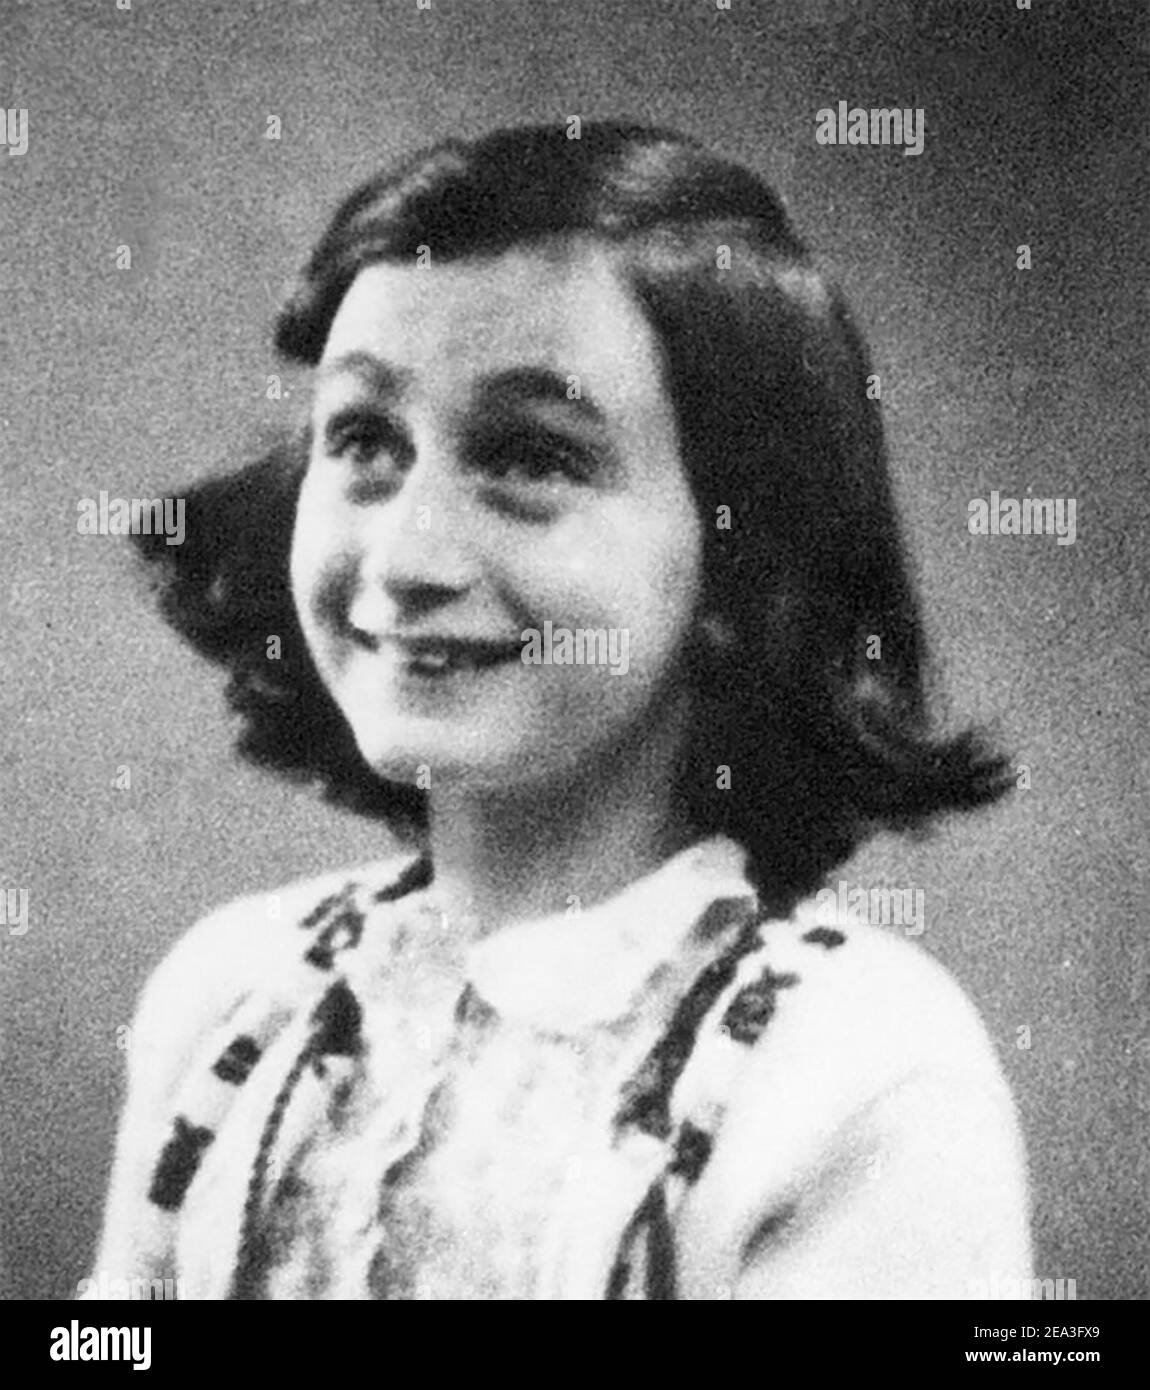 ANNE FRANK (1929-1945) deutsch-holländische Tagebuchschreiberin und Holocaust-Opfer, fotografiert 1942 Stockfoto